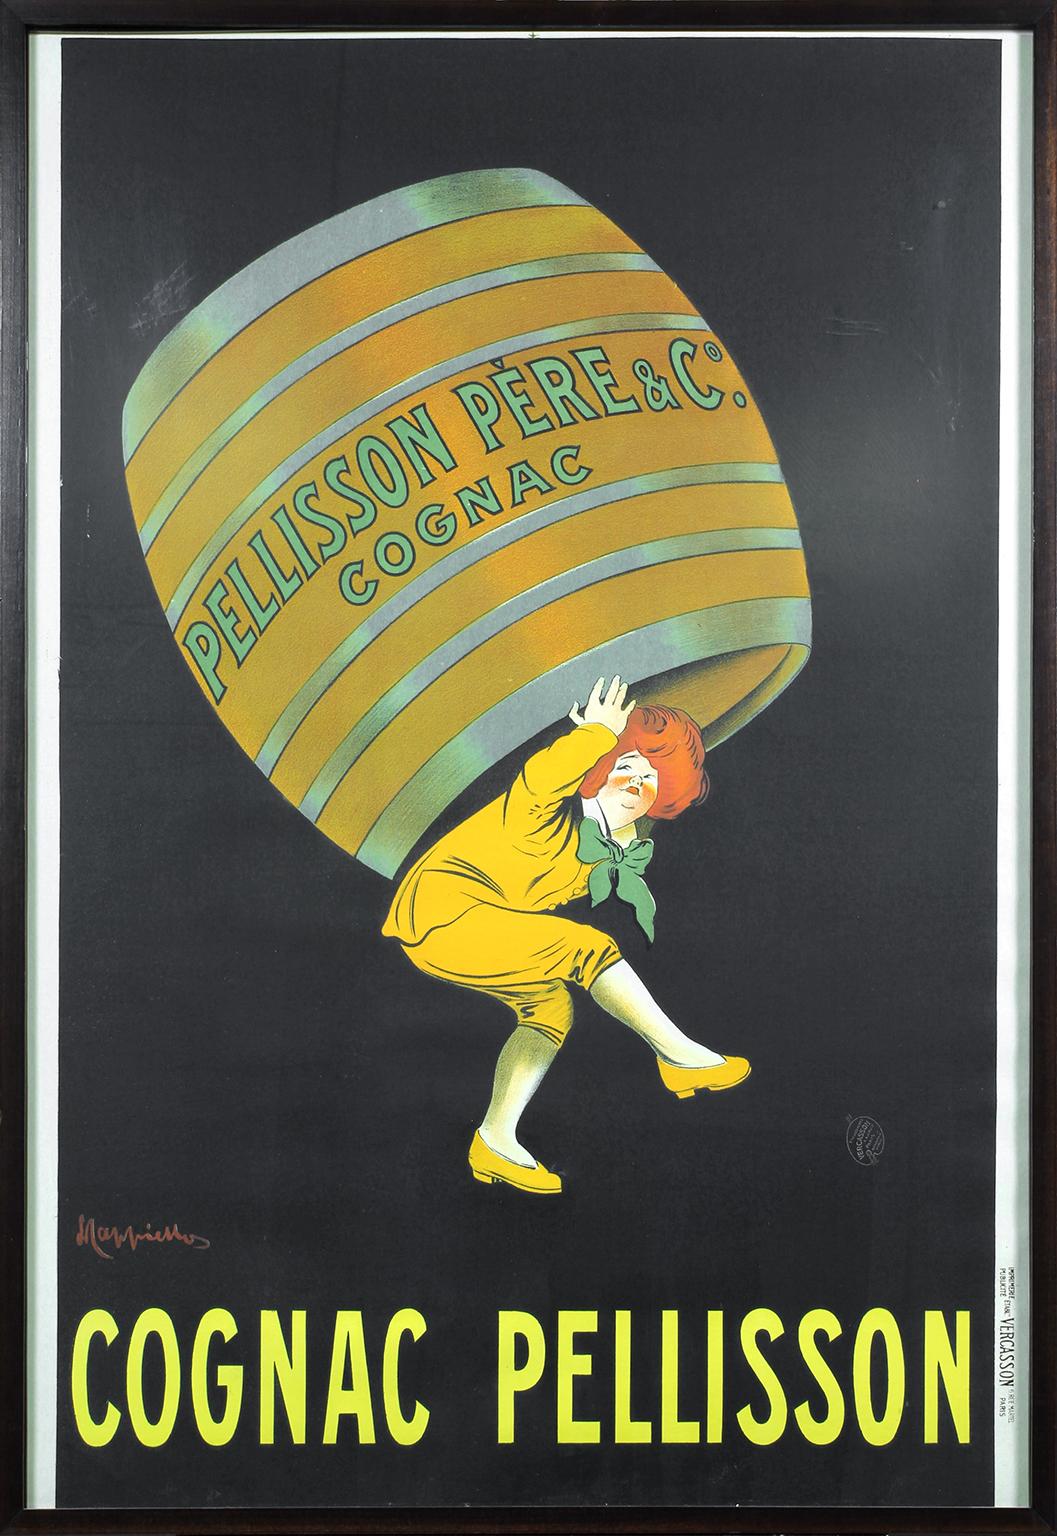 Original vintage Cognac Pellisson poster by Leonetto Cappiello 